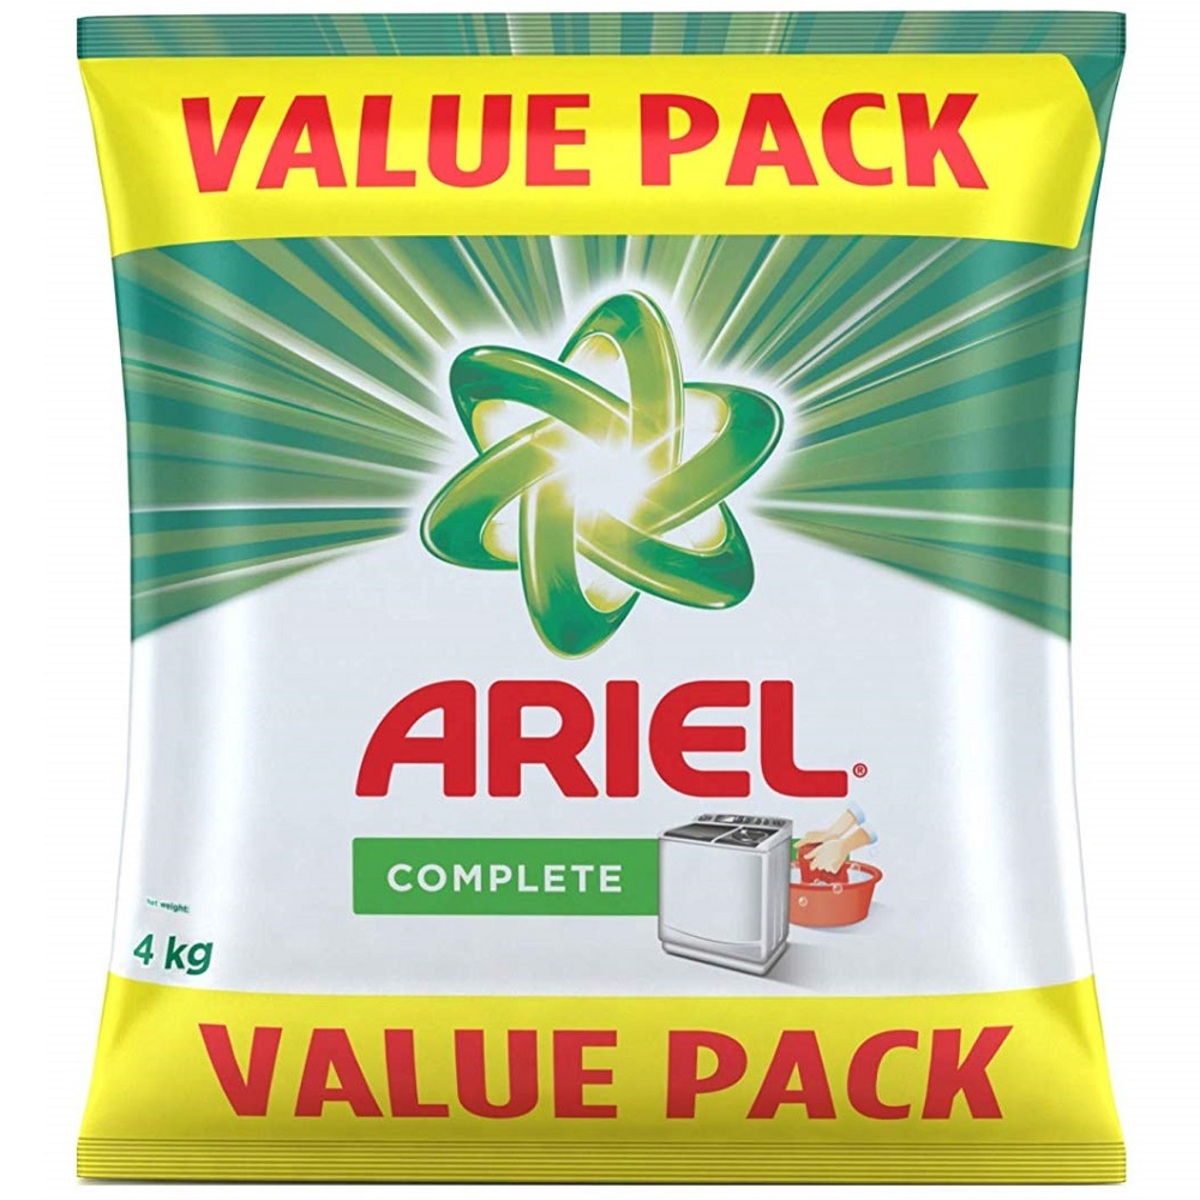 Ariel Complete 4kg